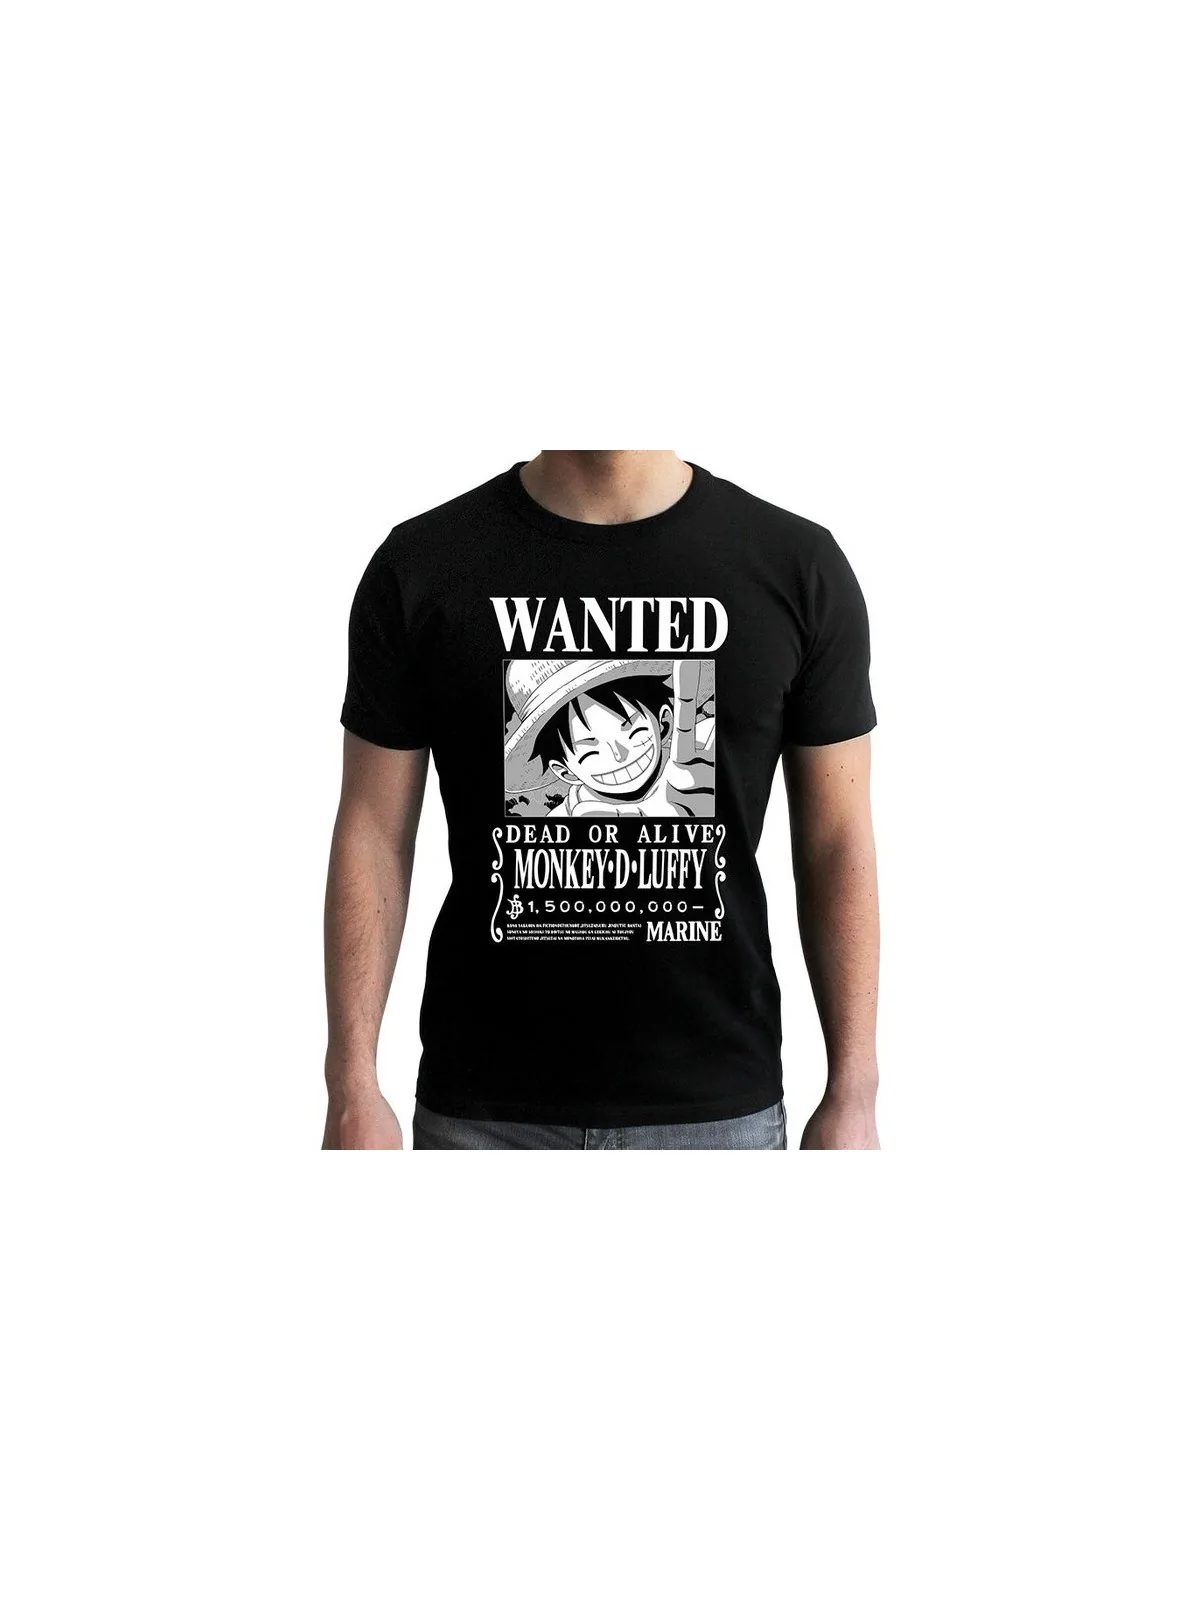 Comprar Camiseta One Piece Wanted Luffy barato al mejor precio 19,99 €